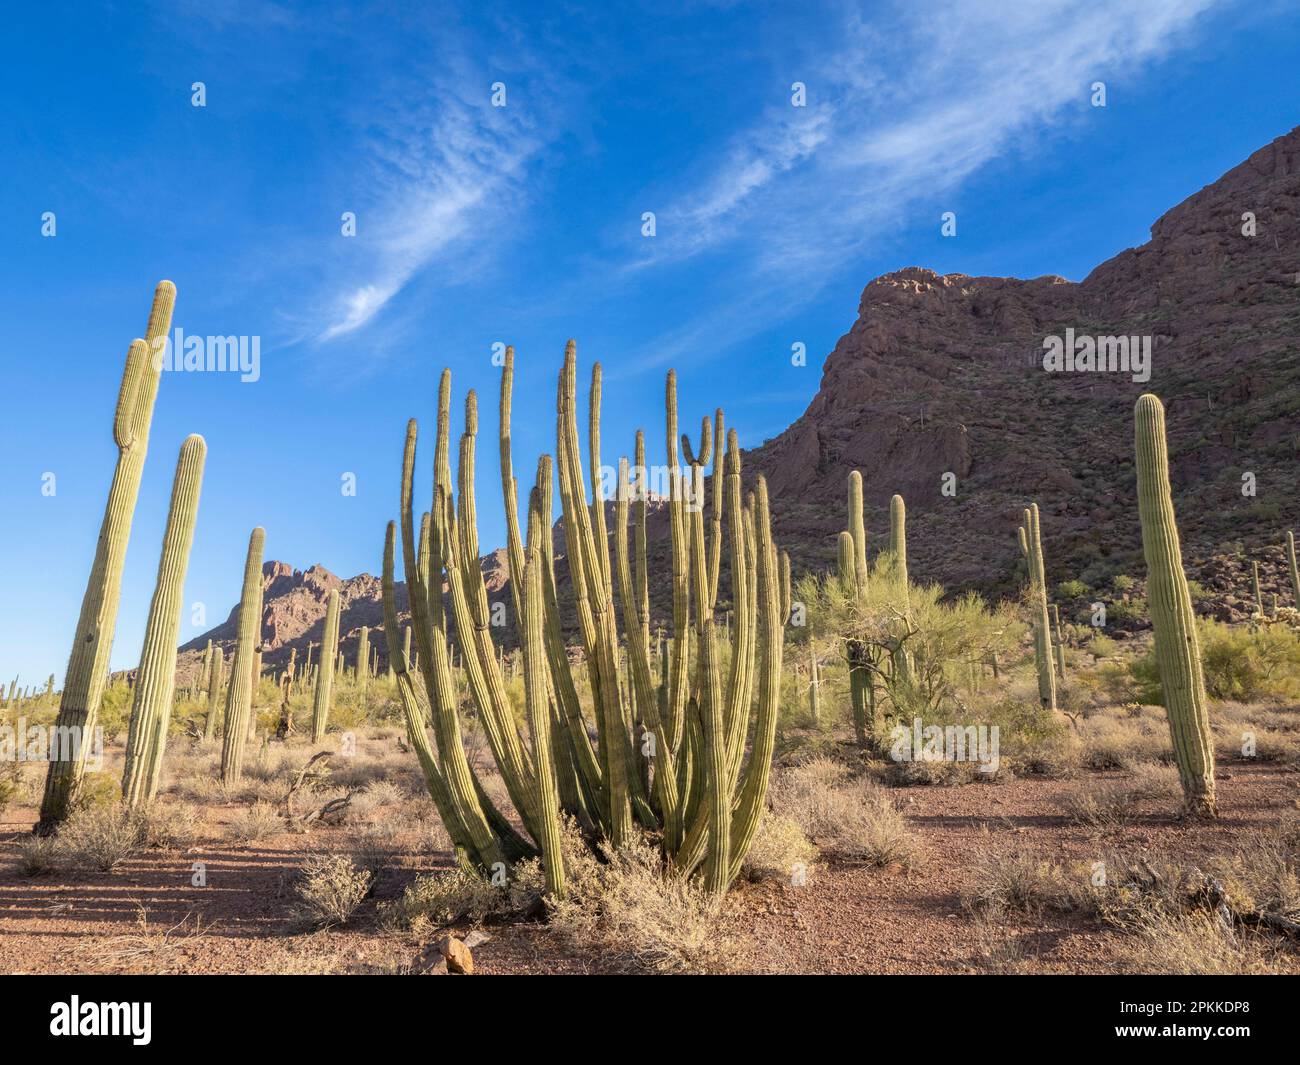 Organ pipe cactus (Stenocereus thurberi), Organ Pipe Cactus National Monument, Sonoran Desert, Arizona, United States of America, North America Stock Photo